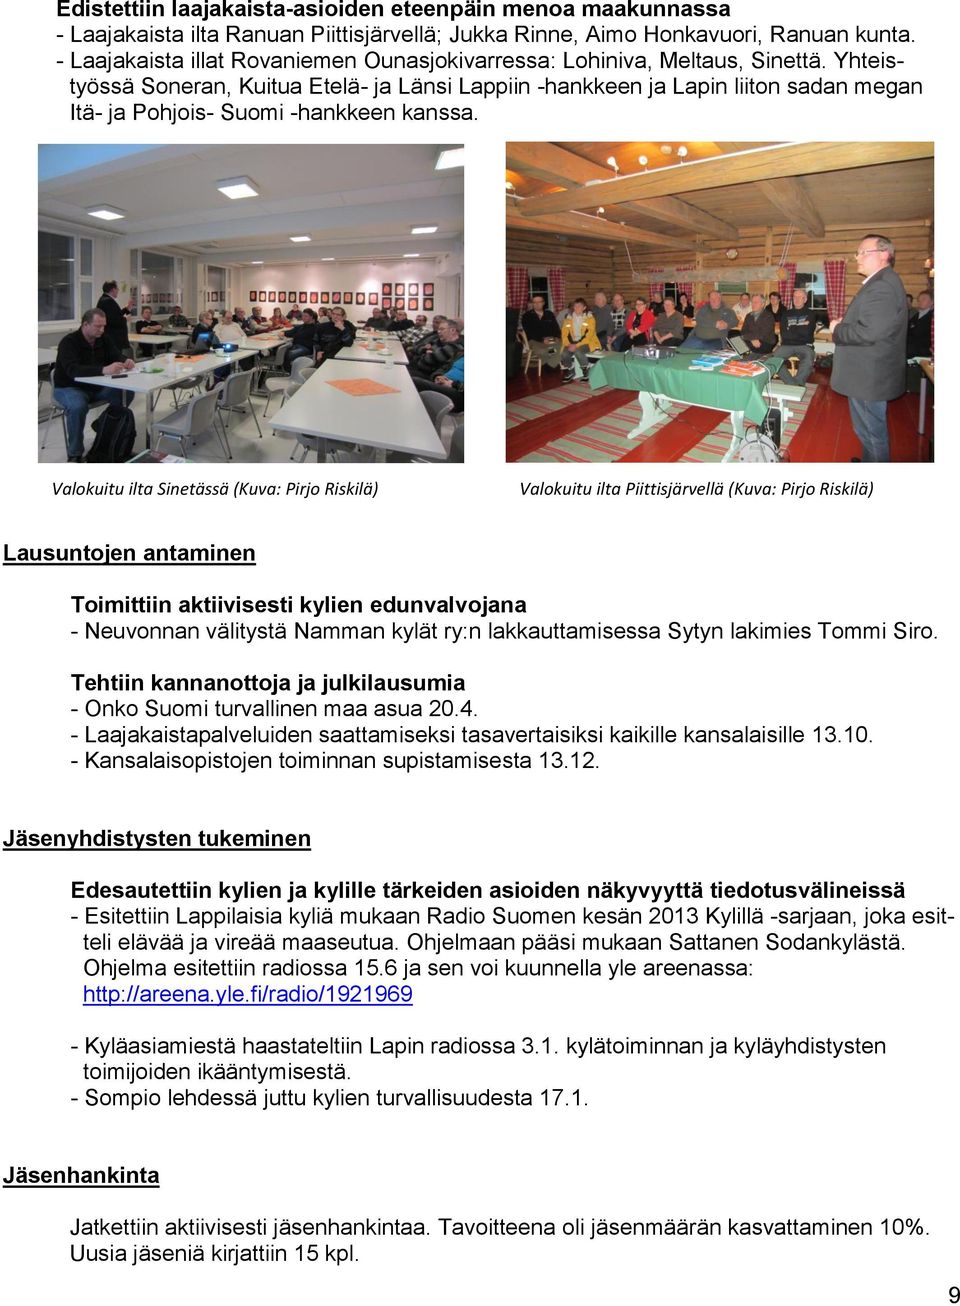 Yhteistyössä Soneran, Kuitua Etelä- ja Länsi Lappiin -hankkeen ja Lapin liiton sadan megan Itä- ja Pohjois- Suomi -hankkeen kanssa.